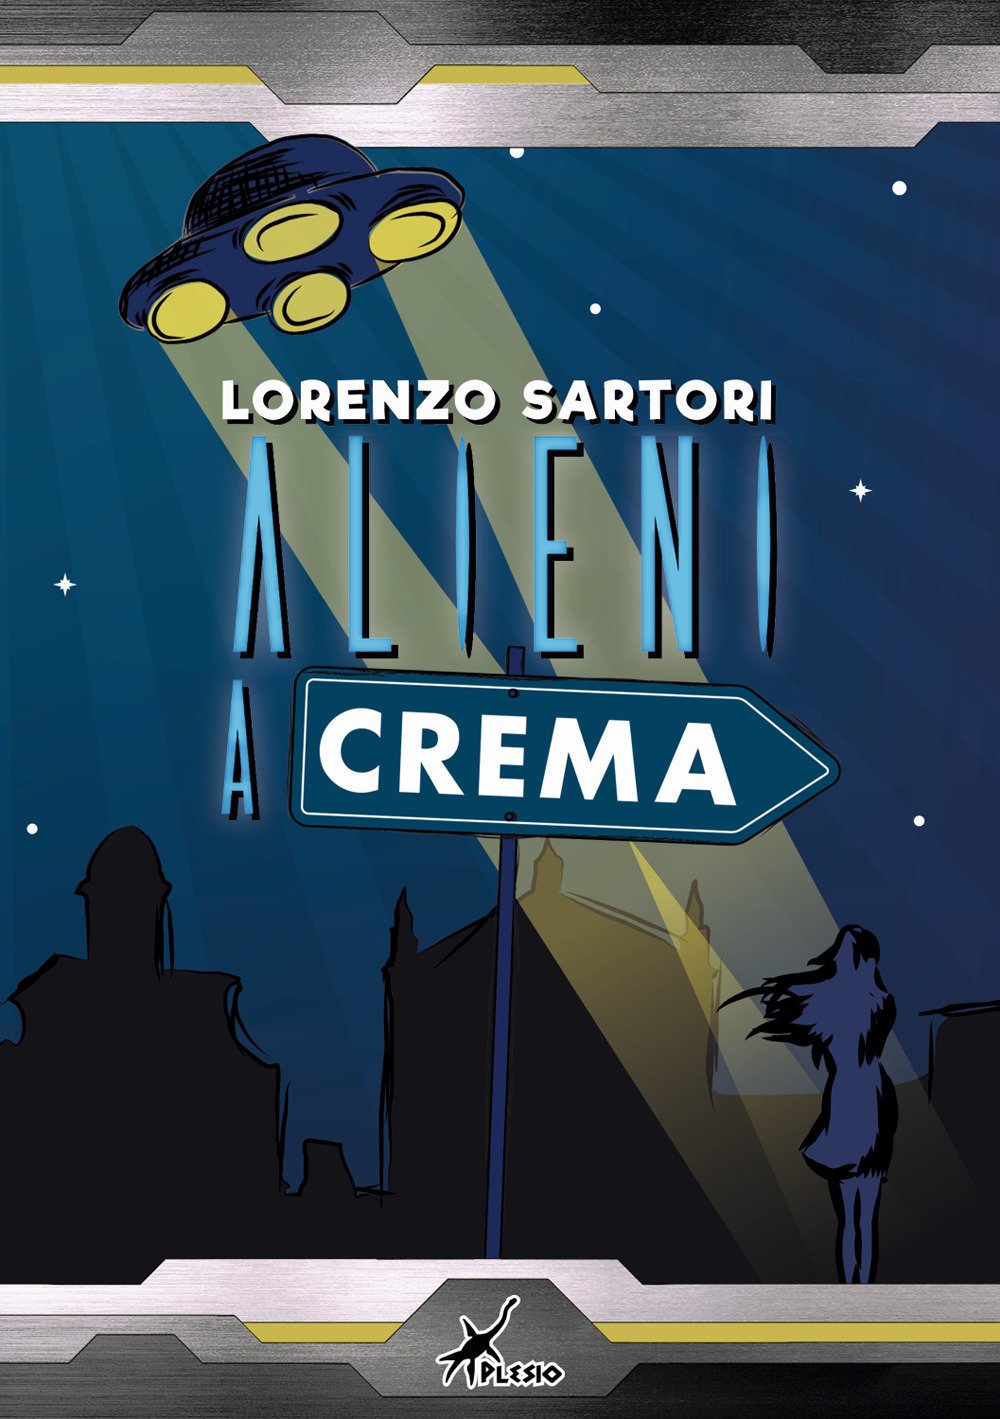 Recensione: “Alieni a Crema” di Lorenzo Sartori